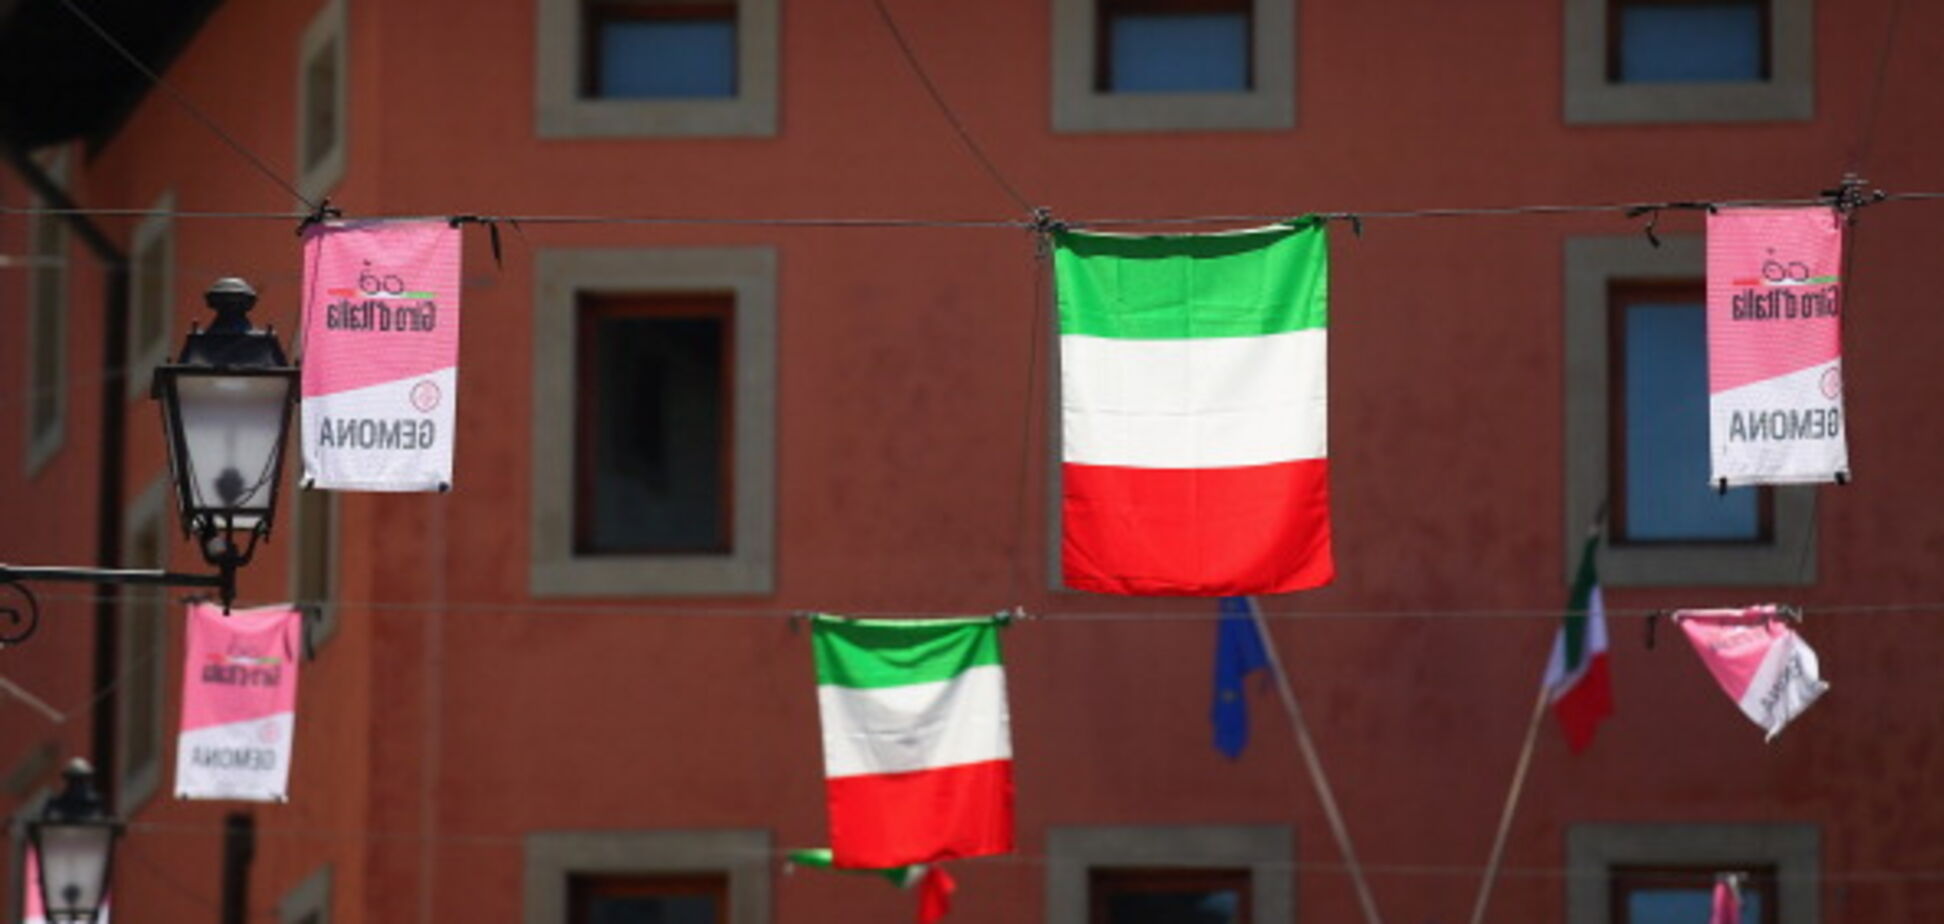 Ще один регіон Італії захотів провести референдум